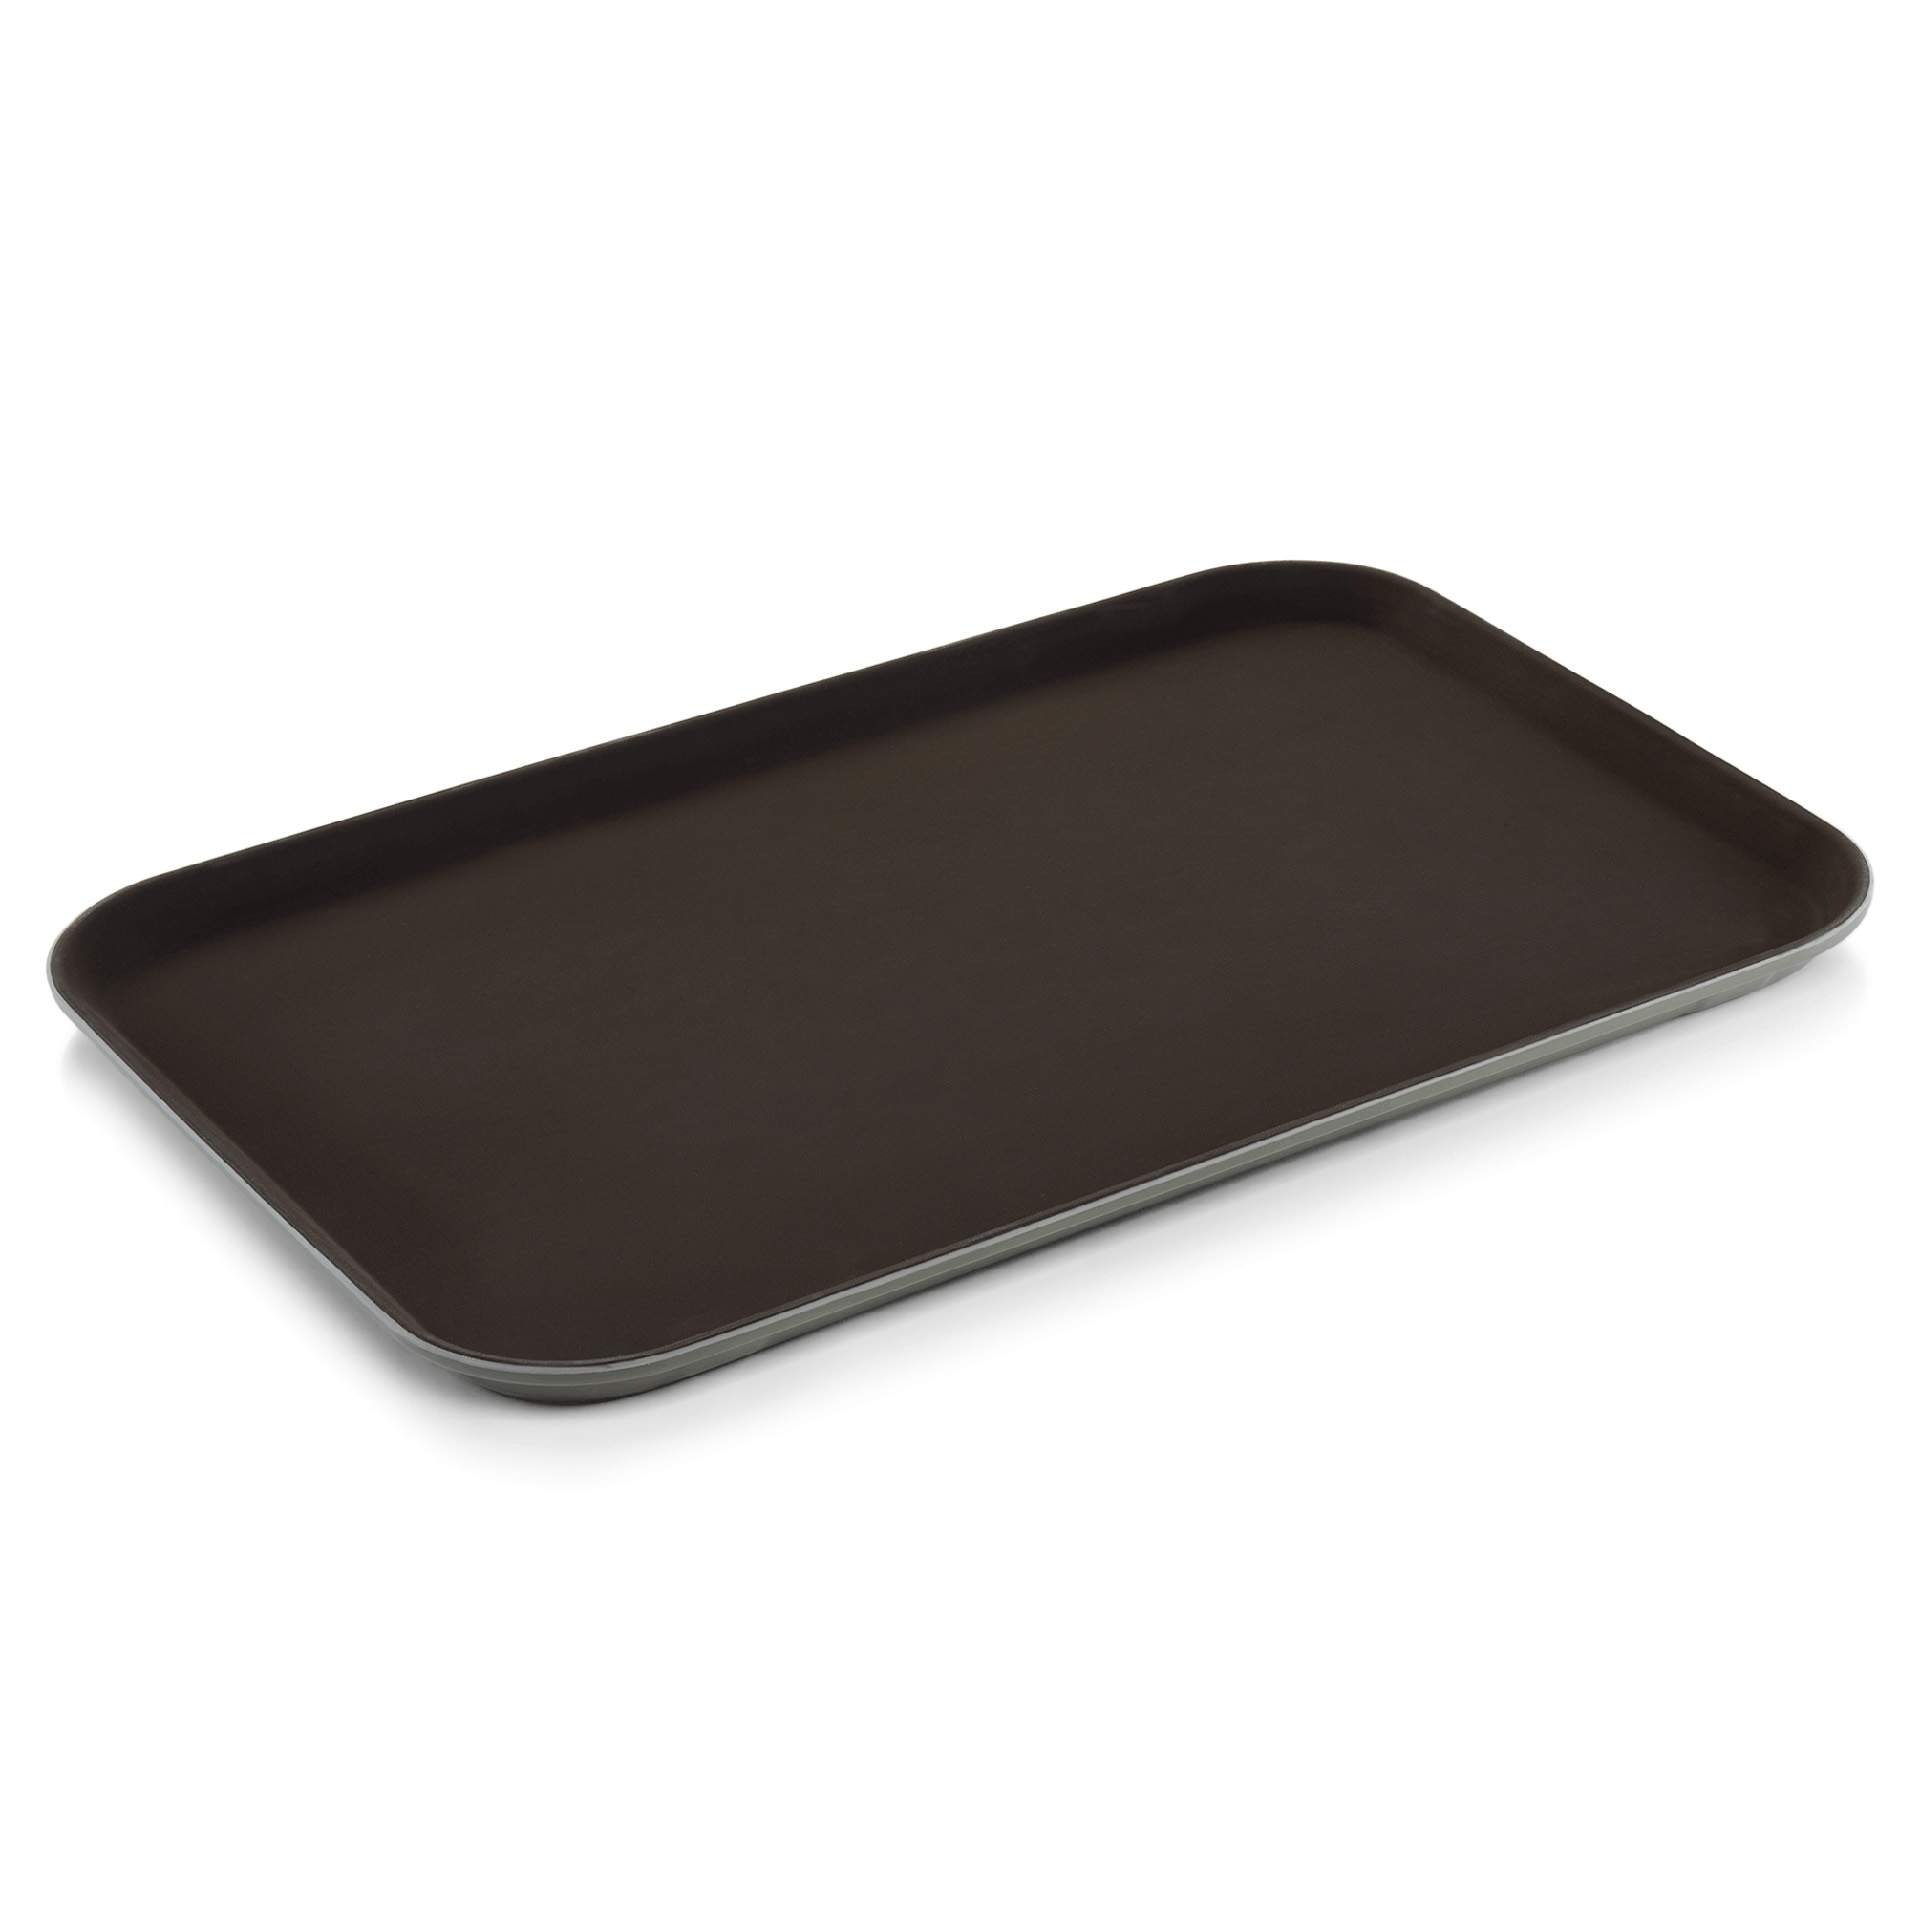 Tablett - mit rutschhemmender Oberfläche - braun - Abm. 60 x 40 cm - Polypropylen - 9208600-A